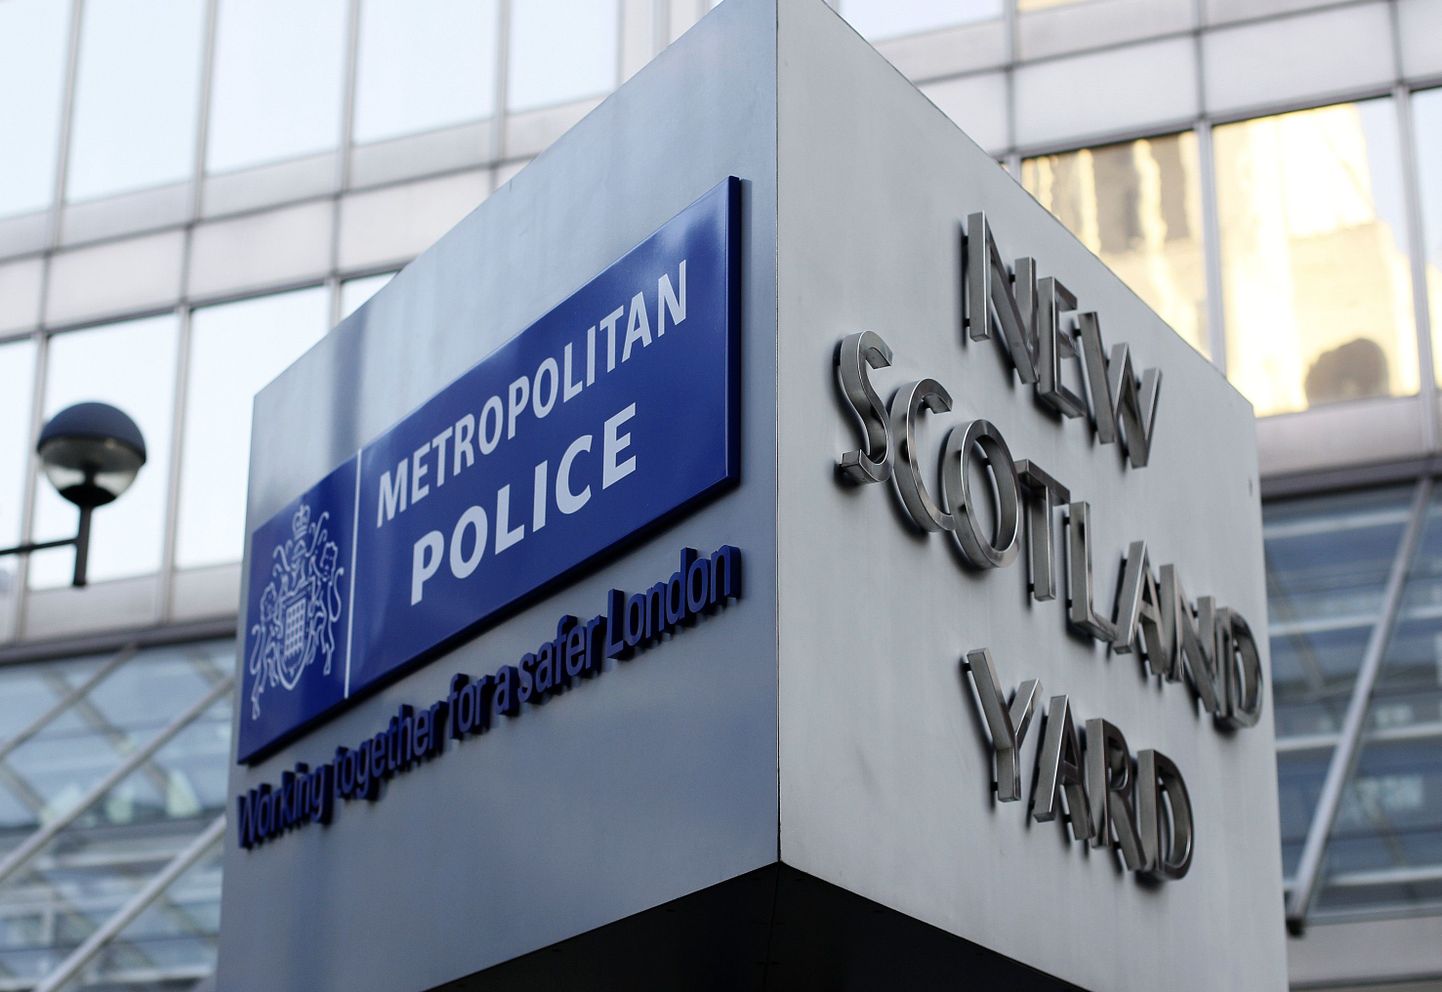 Vaade Scotland Yardi peakorterile.